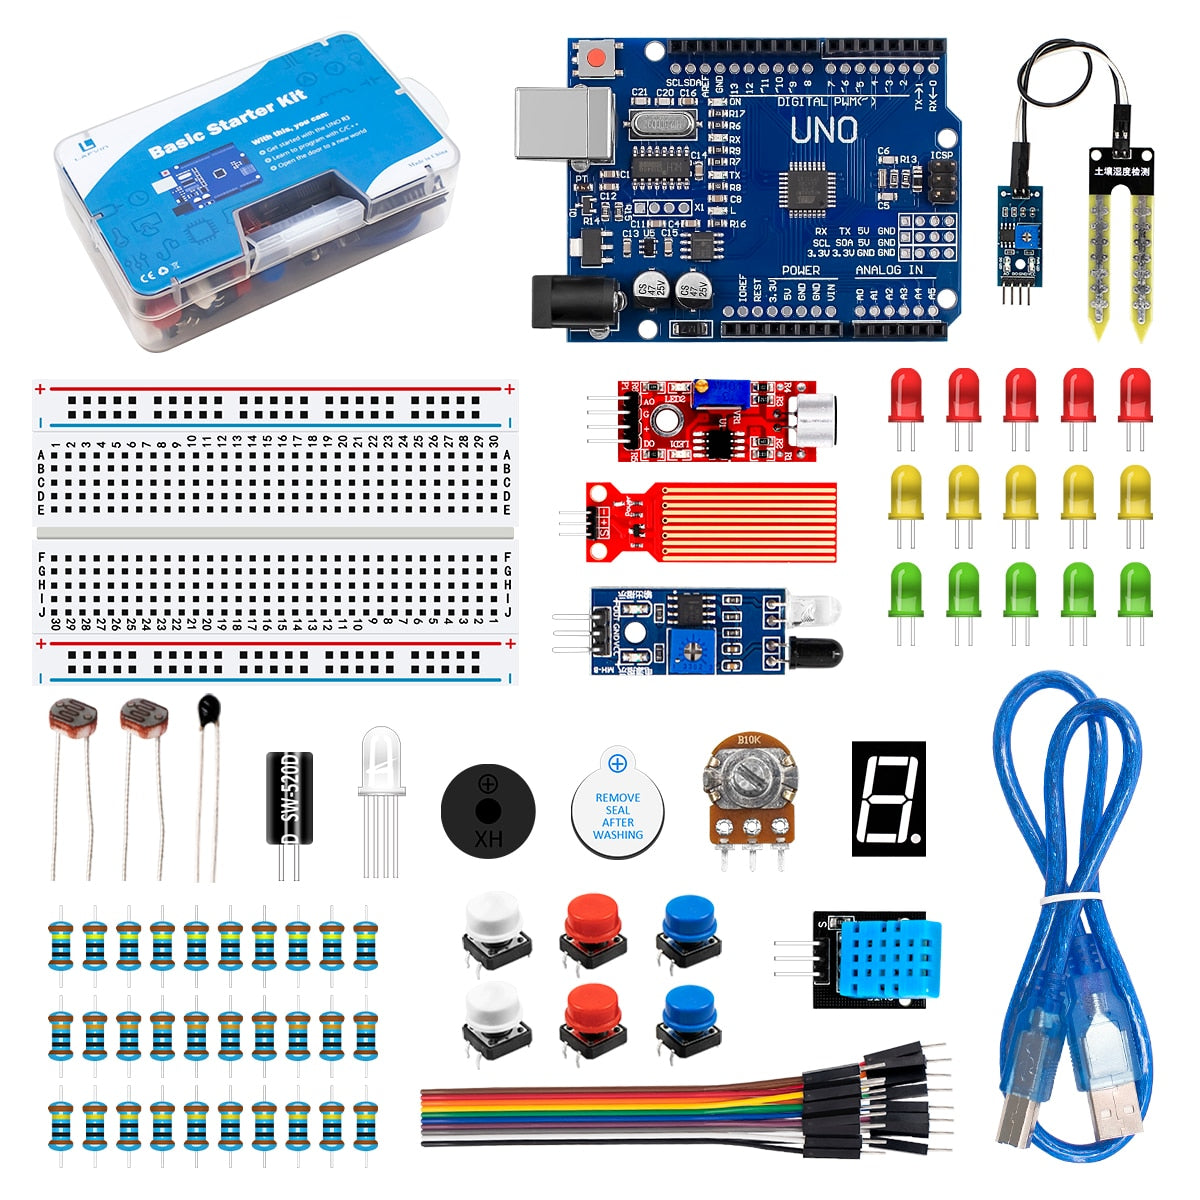 Get an Arduino UNO Starter Kit for Just $20 - Maker Advisor